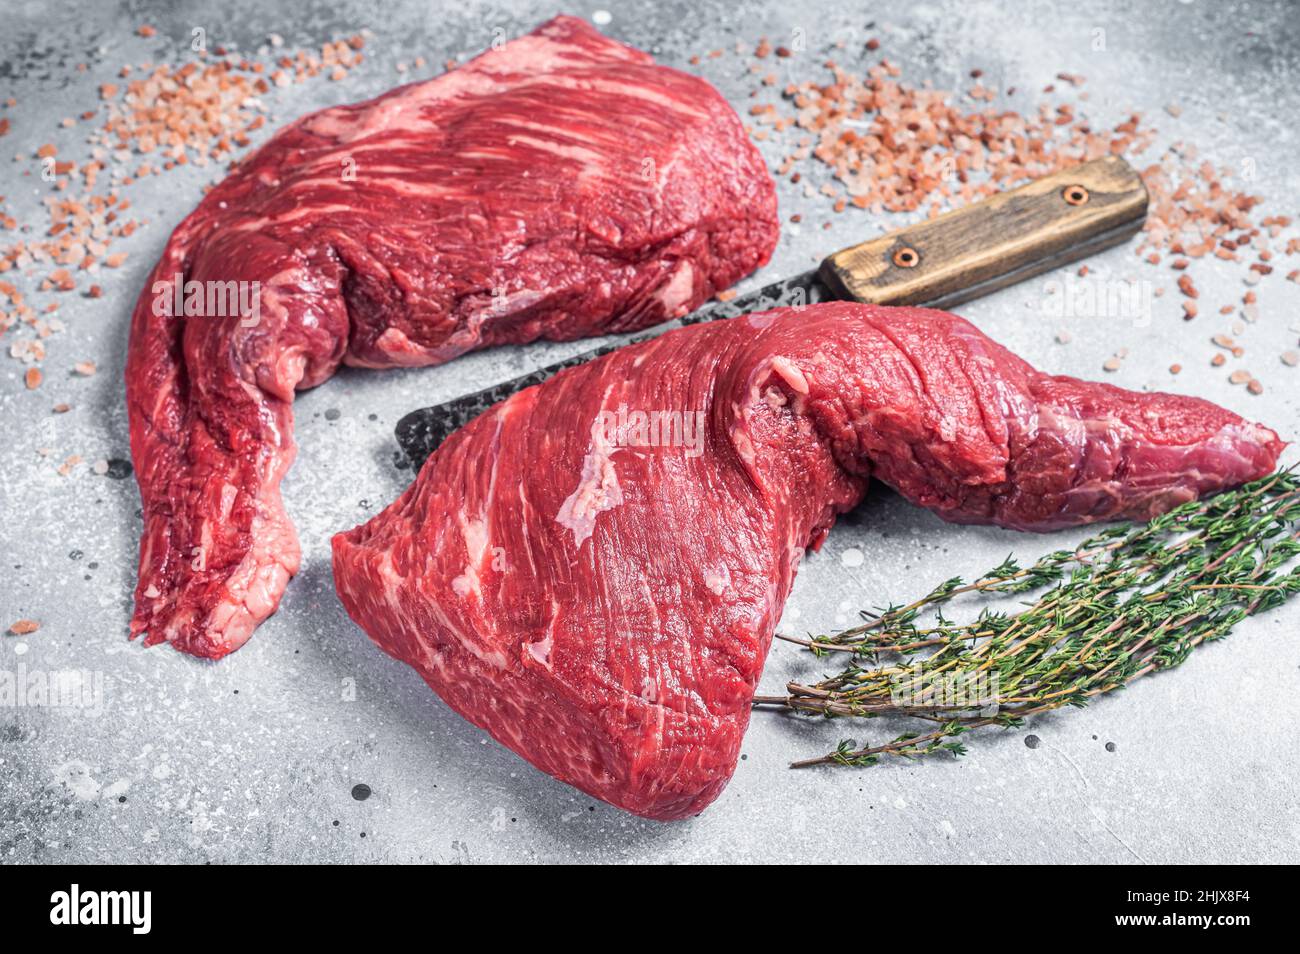 Steak de sirloin à trois pointes non coké sur une table à mousseur avec un plat à viande.Arrière-plan gris.Vue de dessus Banque D'Images